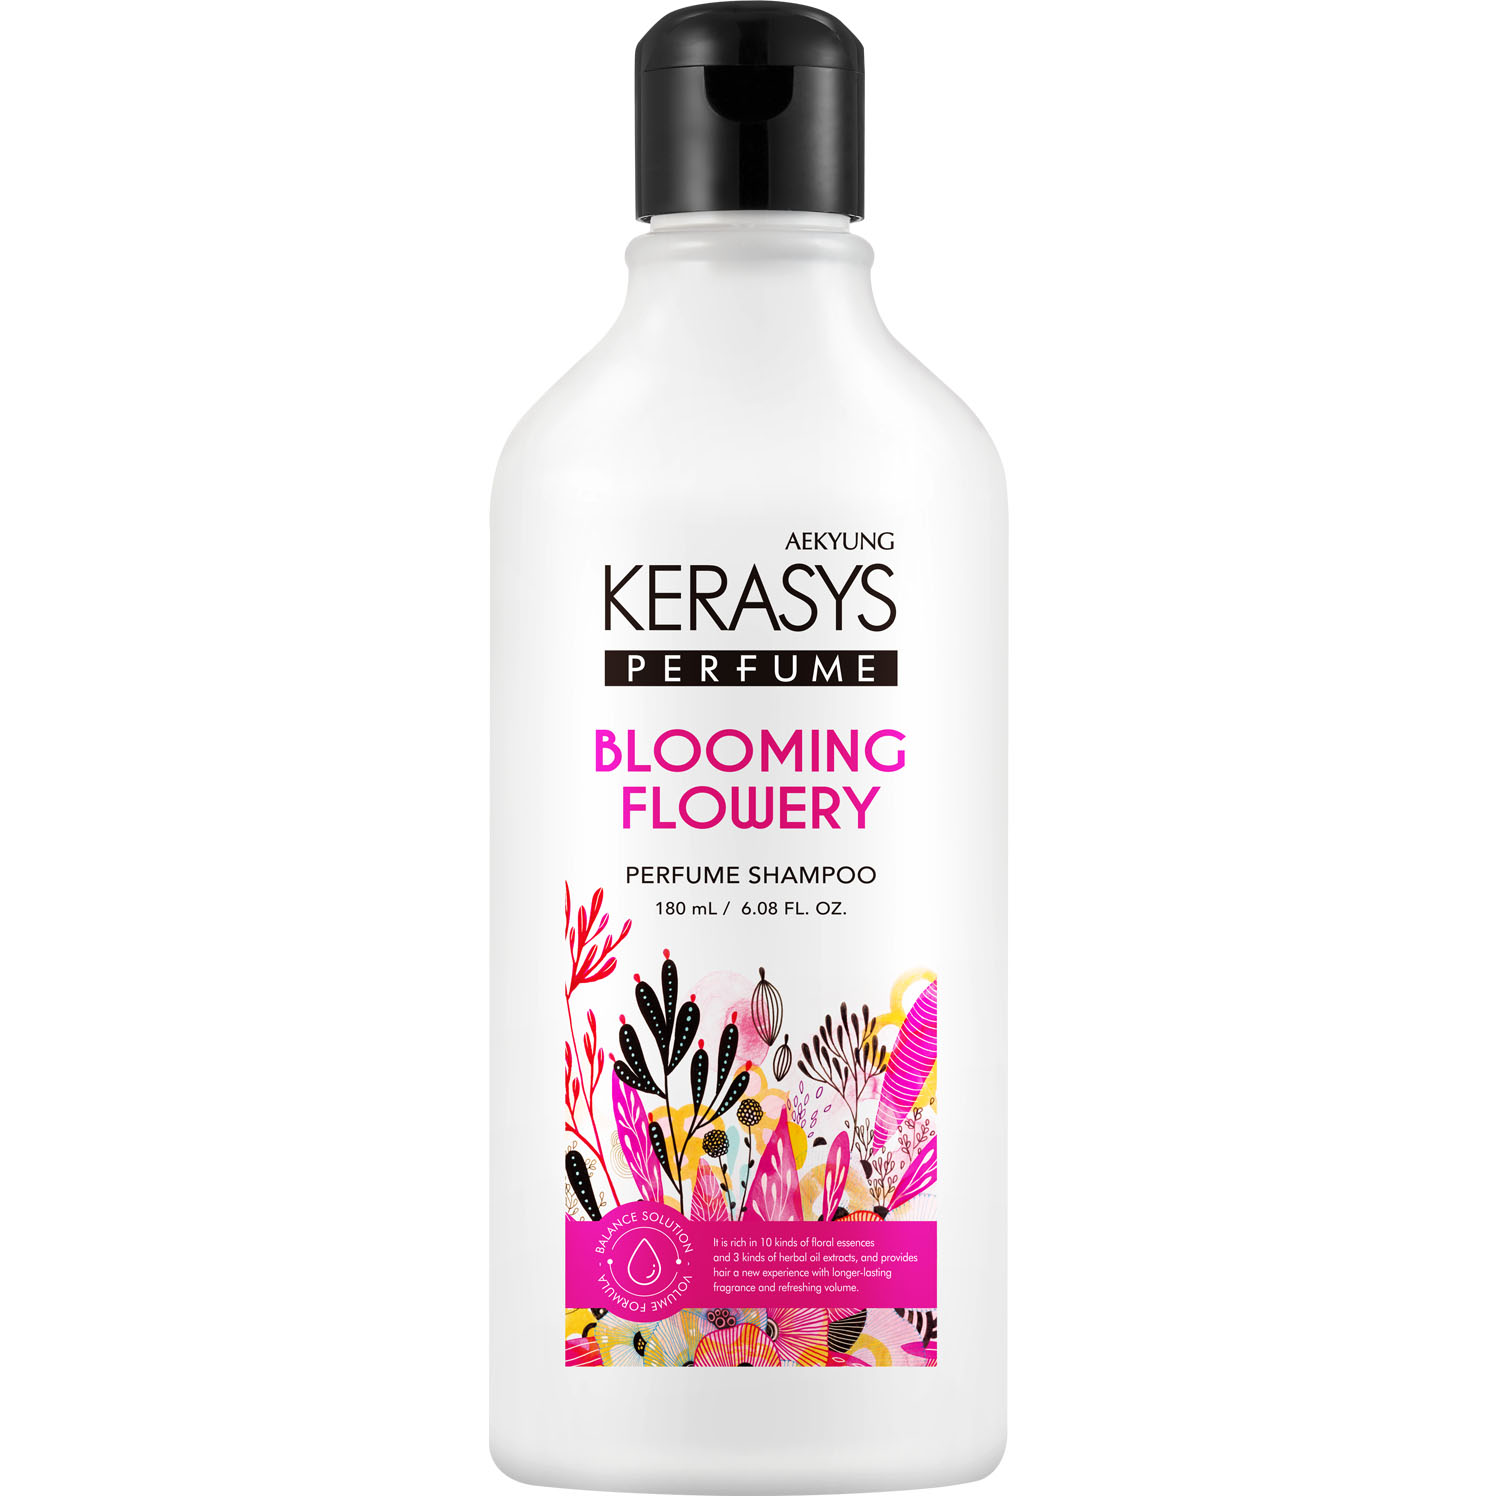 kerasys шампунь для всех типов волос glam stylish 500 мл kerasys perfumed line Kerasys Шампунь для всех типов волос Blooming Flowery, 180 мл (Kerasys, Perfumed Line)